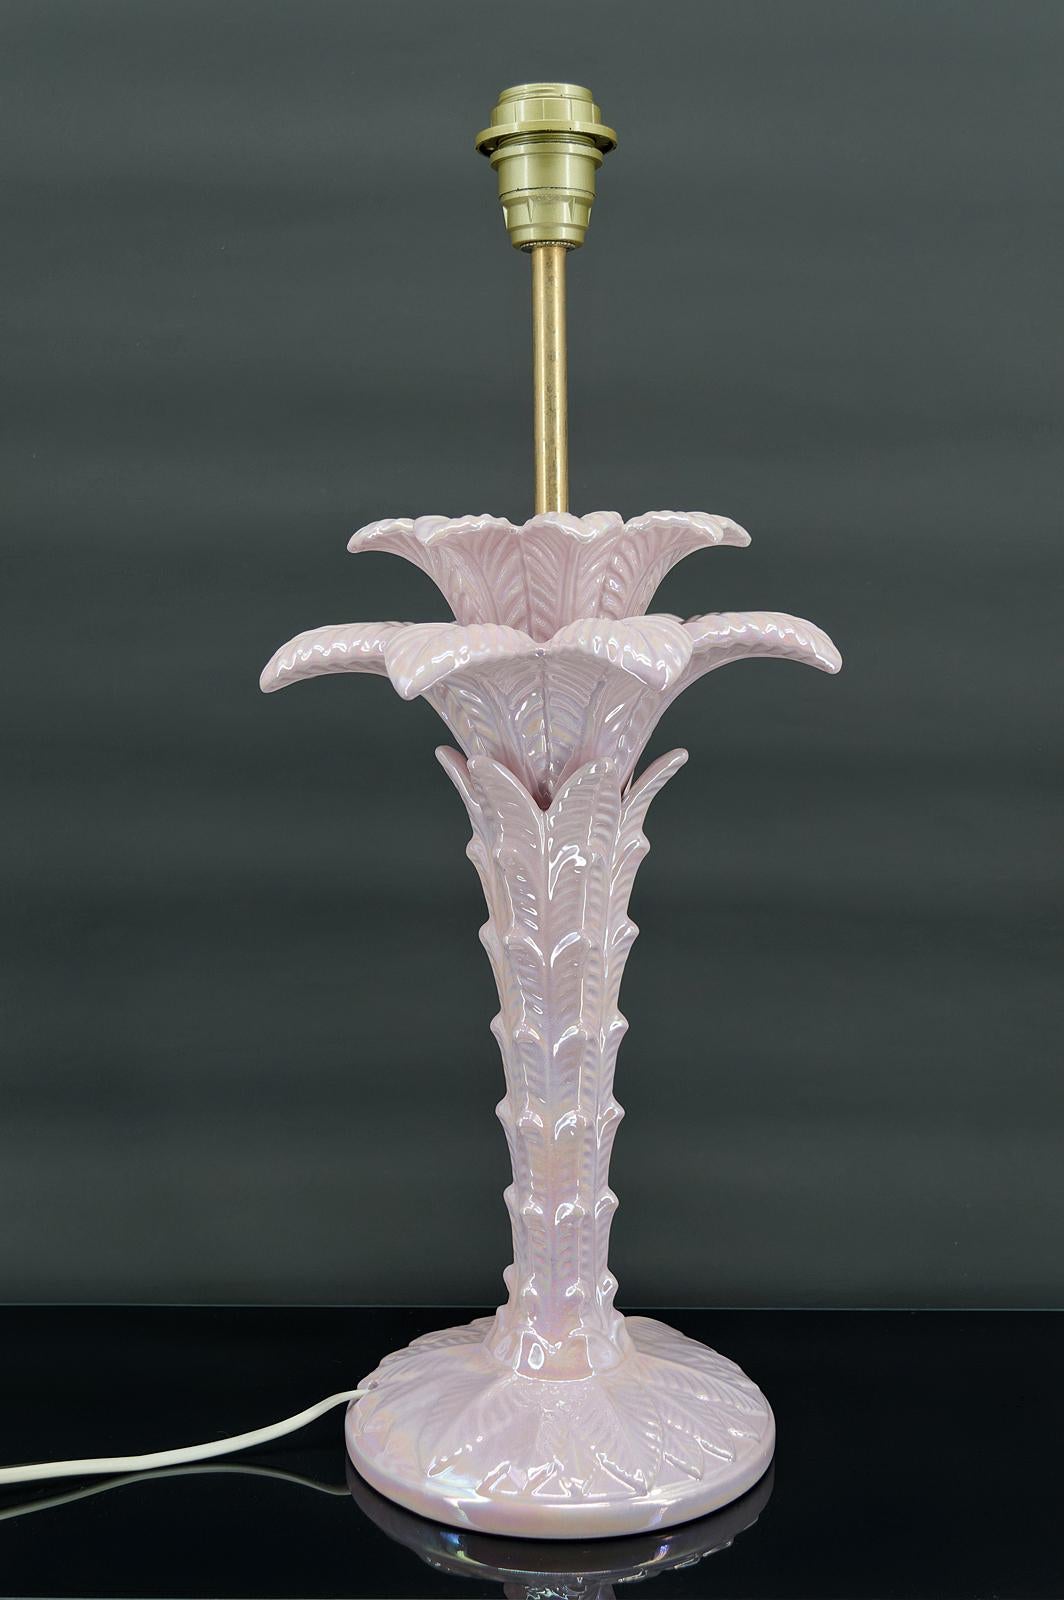 Superbe lampe Palmier en céramique rose nacré.

Italie, vers 1960

Style régence hollywoodienne.

En excellent état, électricité OK.

Dimensions :
hauteur 58 cm
diamètre 28 cm

